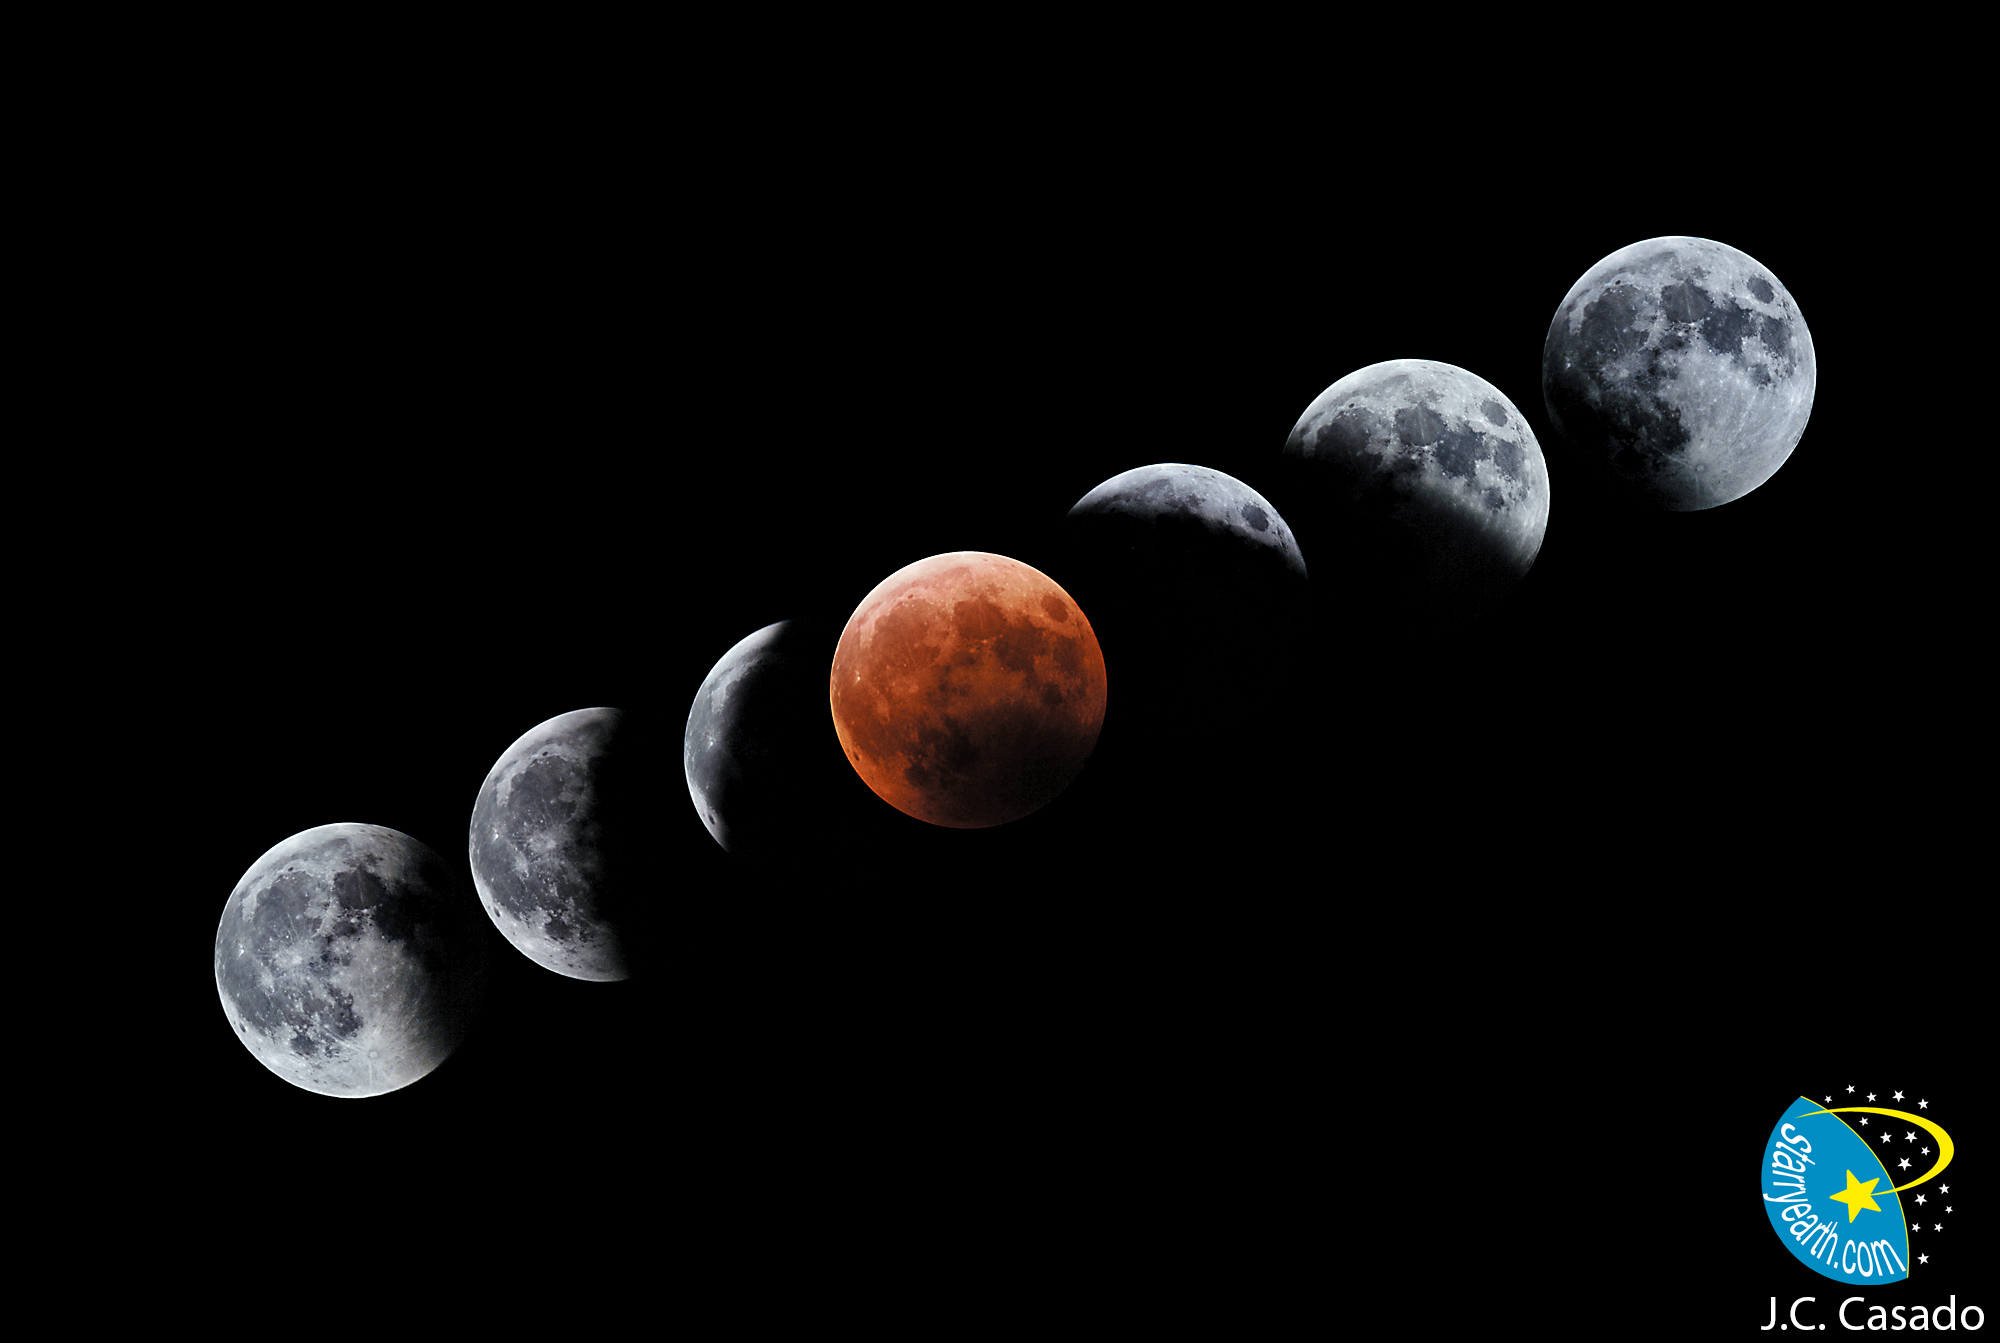 Evolución del Eclipse Total de Luna del 4 de mayo de 2004 (Pico Viejo, P.N. del Teide, Tenerife, España). Adviértase el color rojo que adquiere la Luna (centro imagen) en la fase de totalidad. Imagen: J.C. Casado - tierrayestrellas.com. Fuente: IAC.